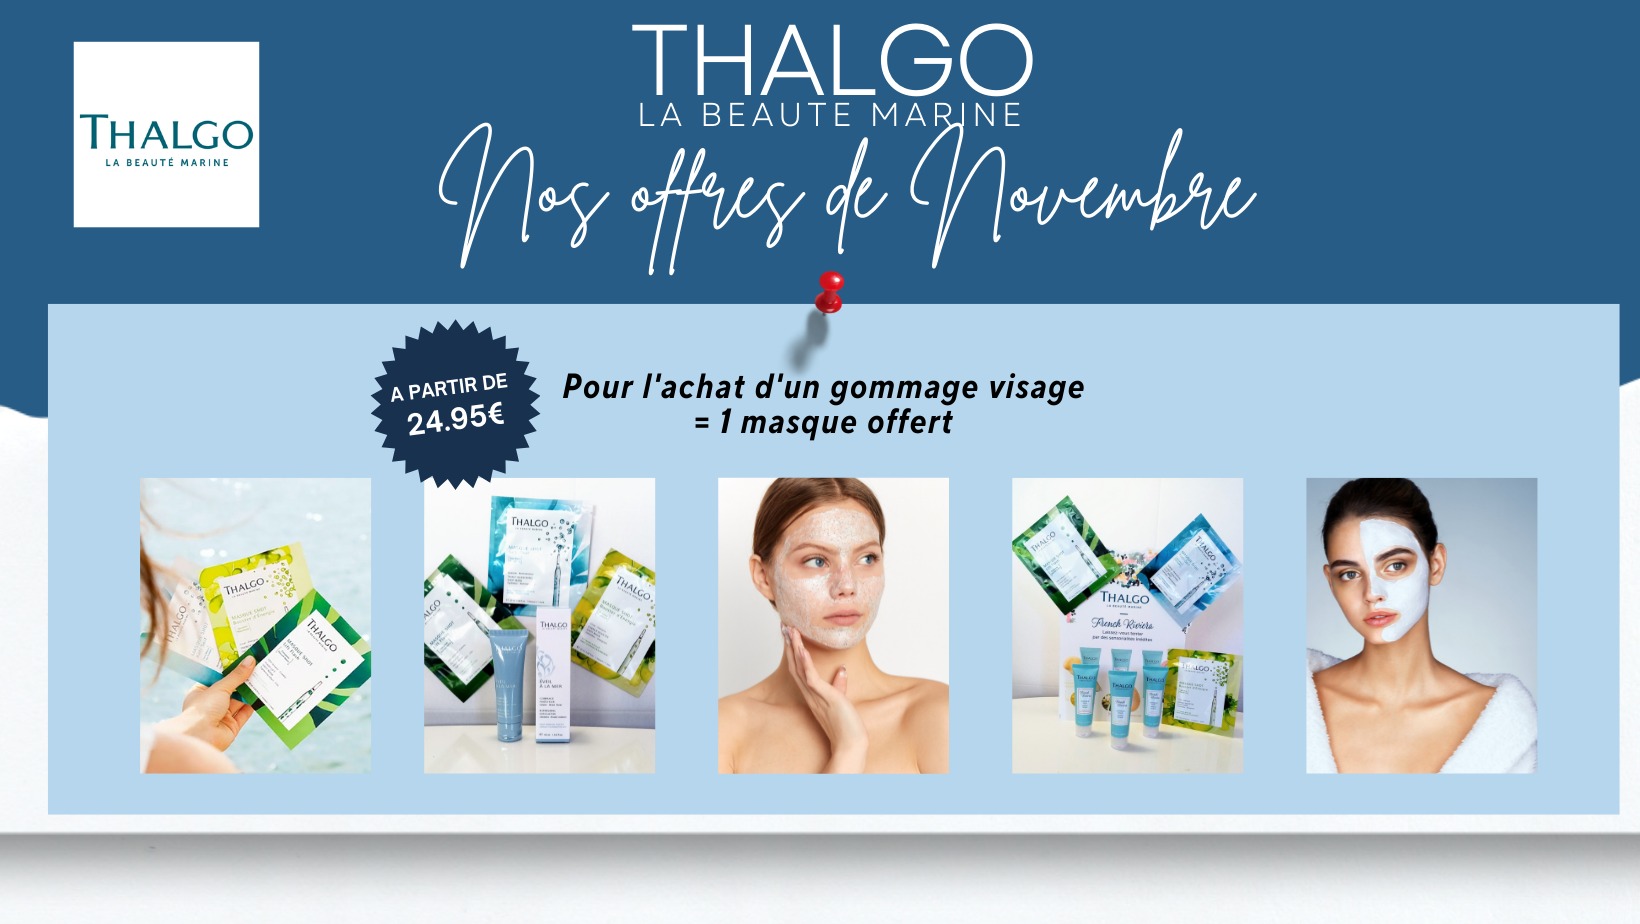 Thalgo offre novembre un masque offert pour achat gommage visage